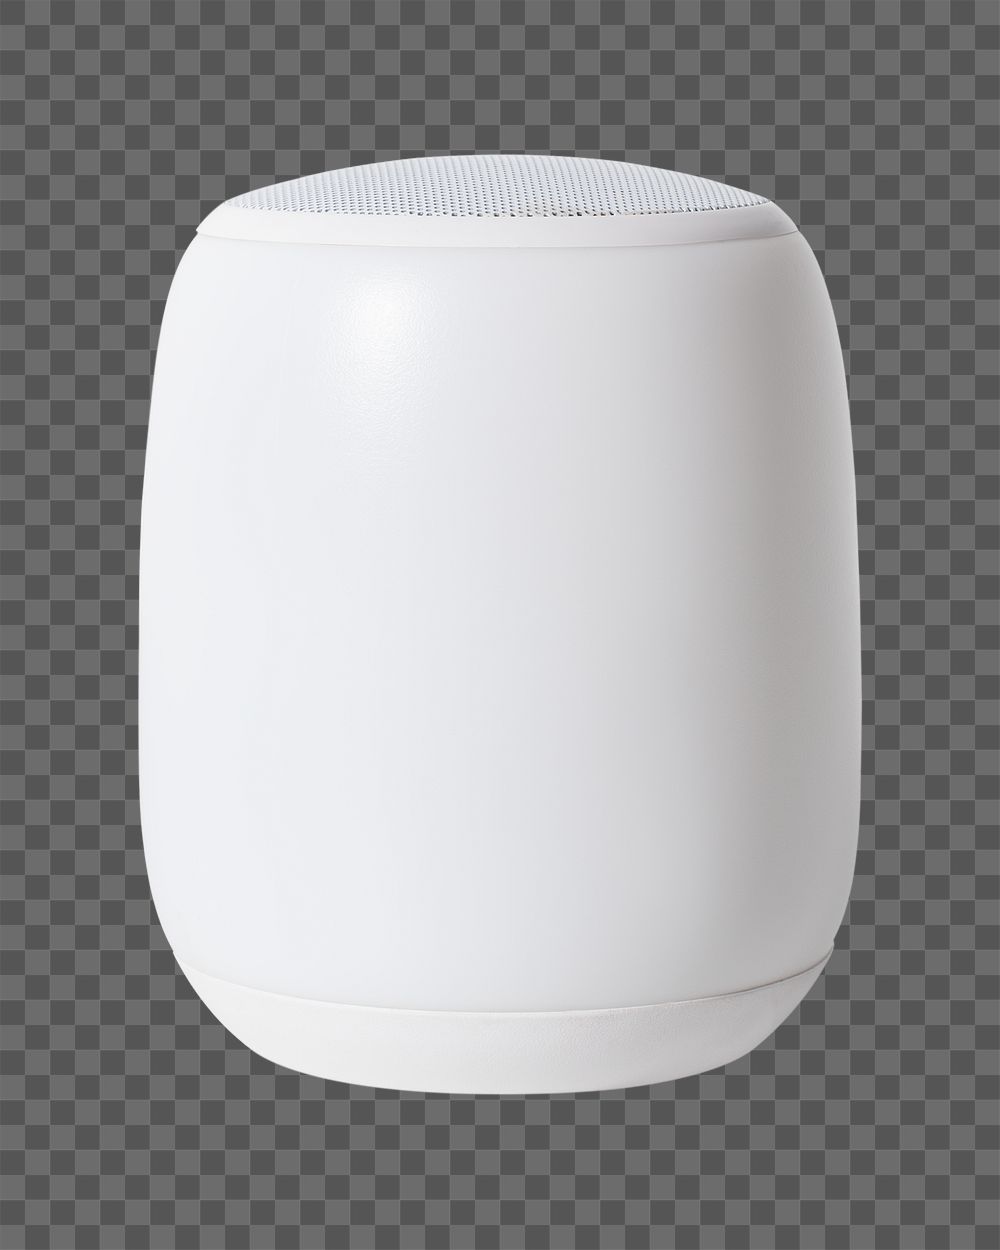 Smart speaker png sticker, transparent background